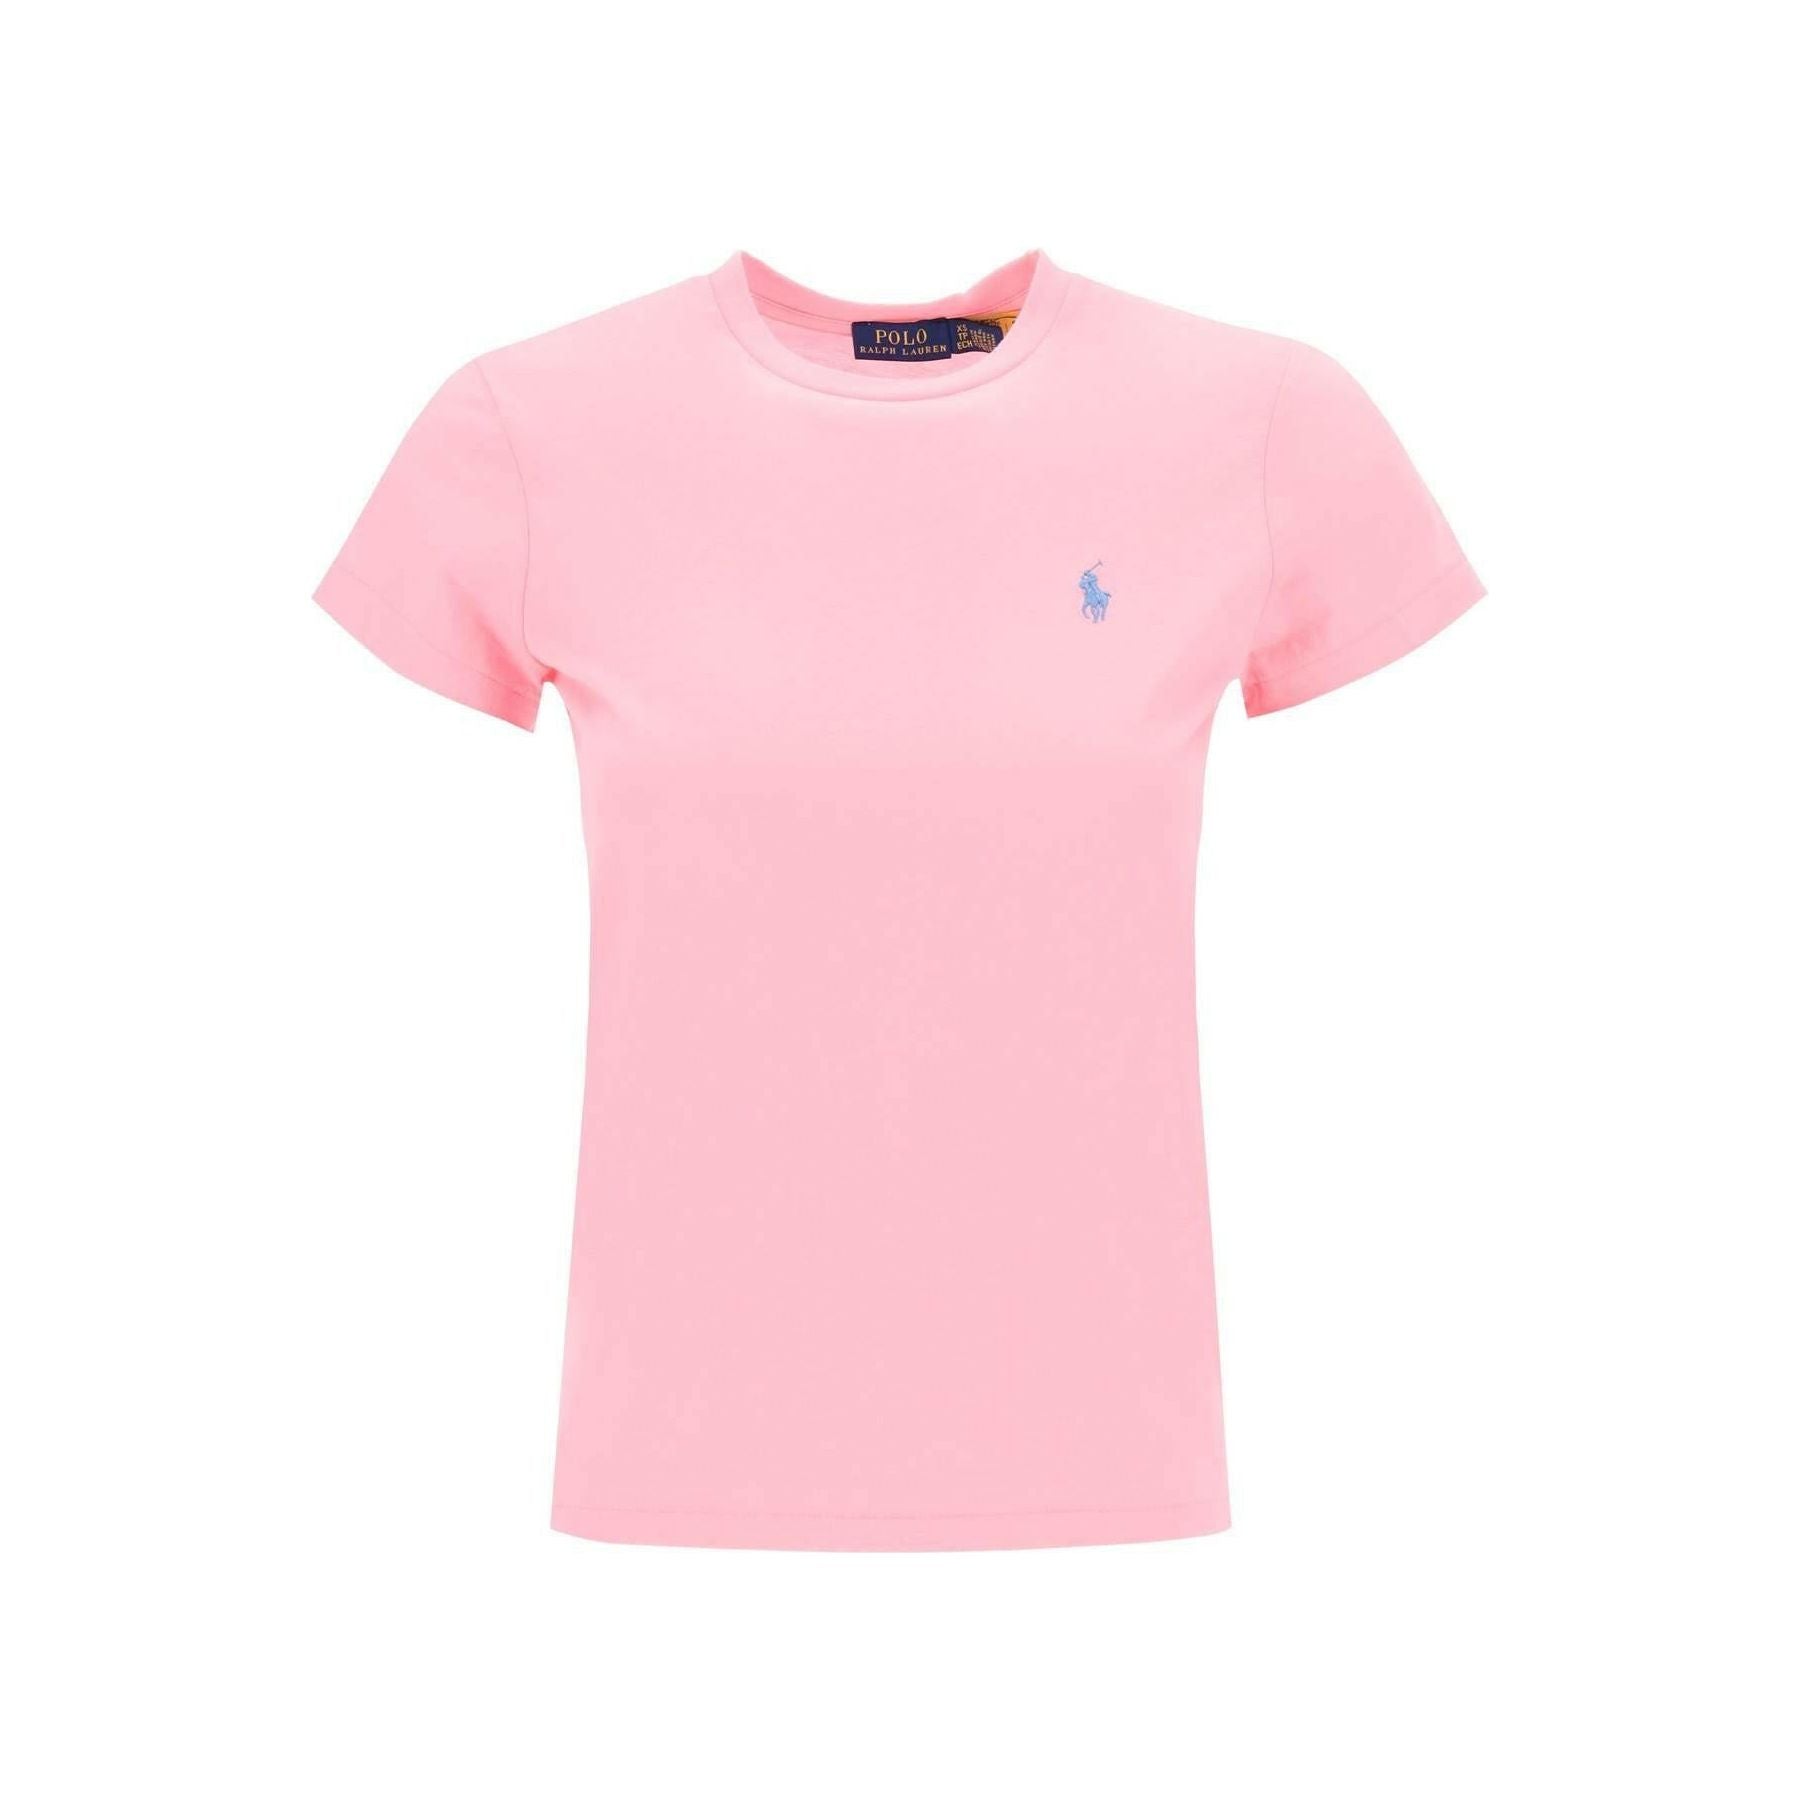 Course Pink Cotton Jersey T-Shirt POLO RALPH LAUREN JOHN JULIA.